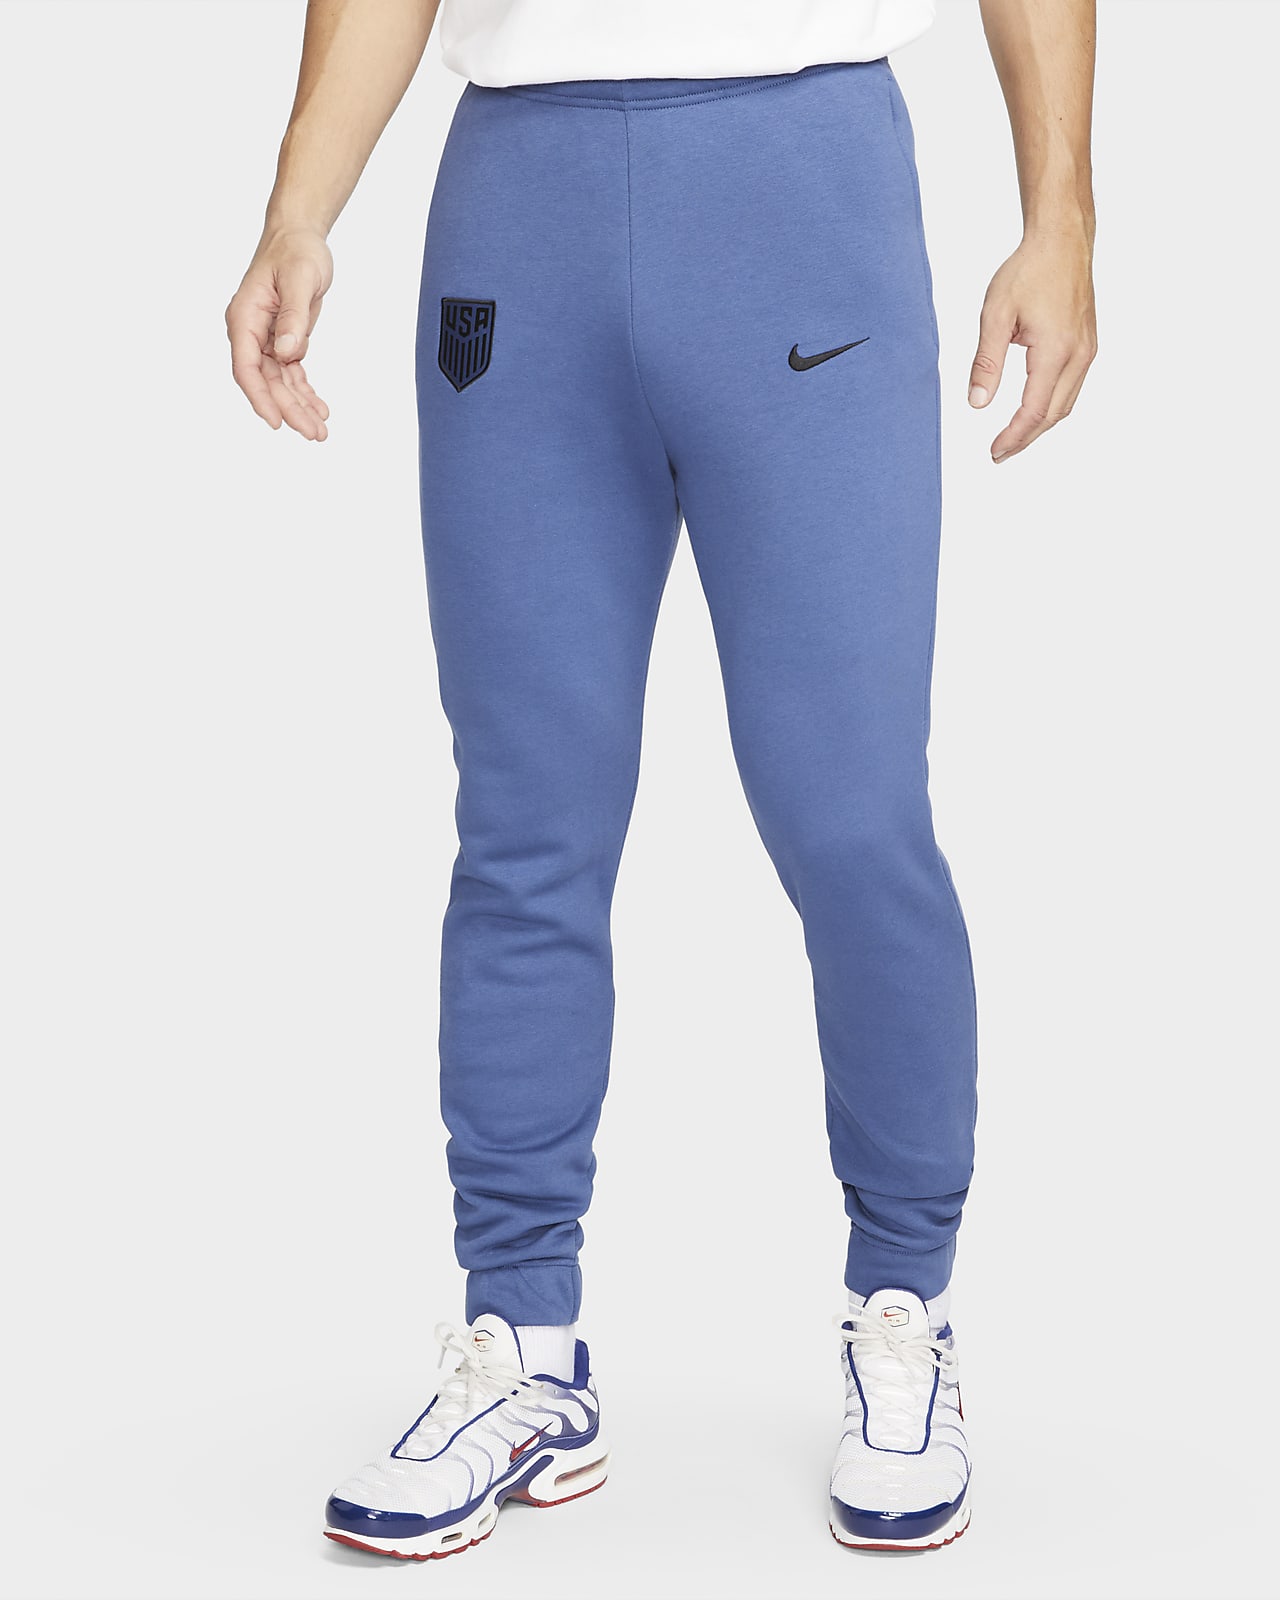 Pants de fútbol de tejido Fleece Nike para hombre de EE. UU.